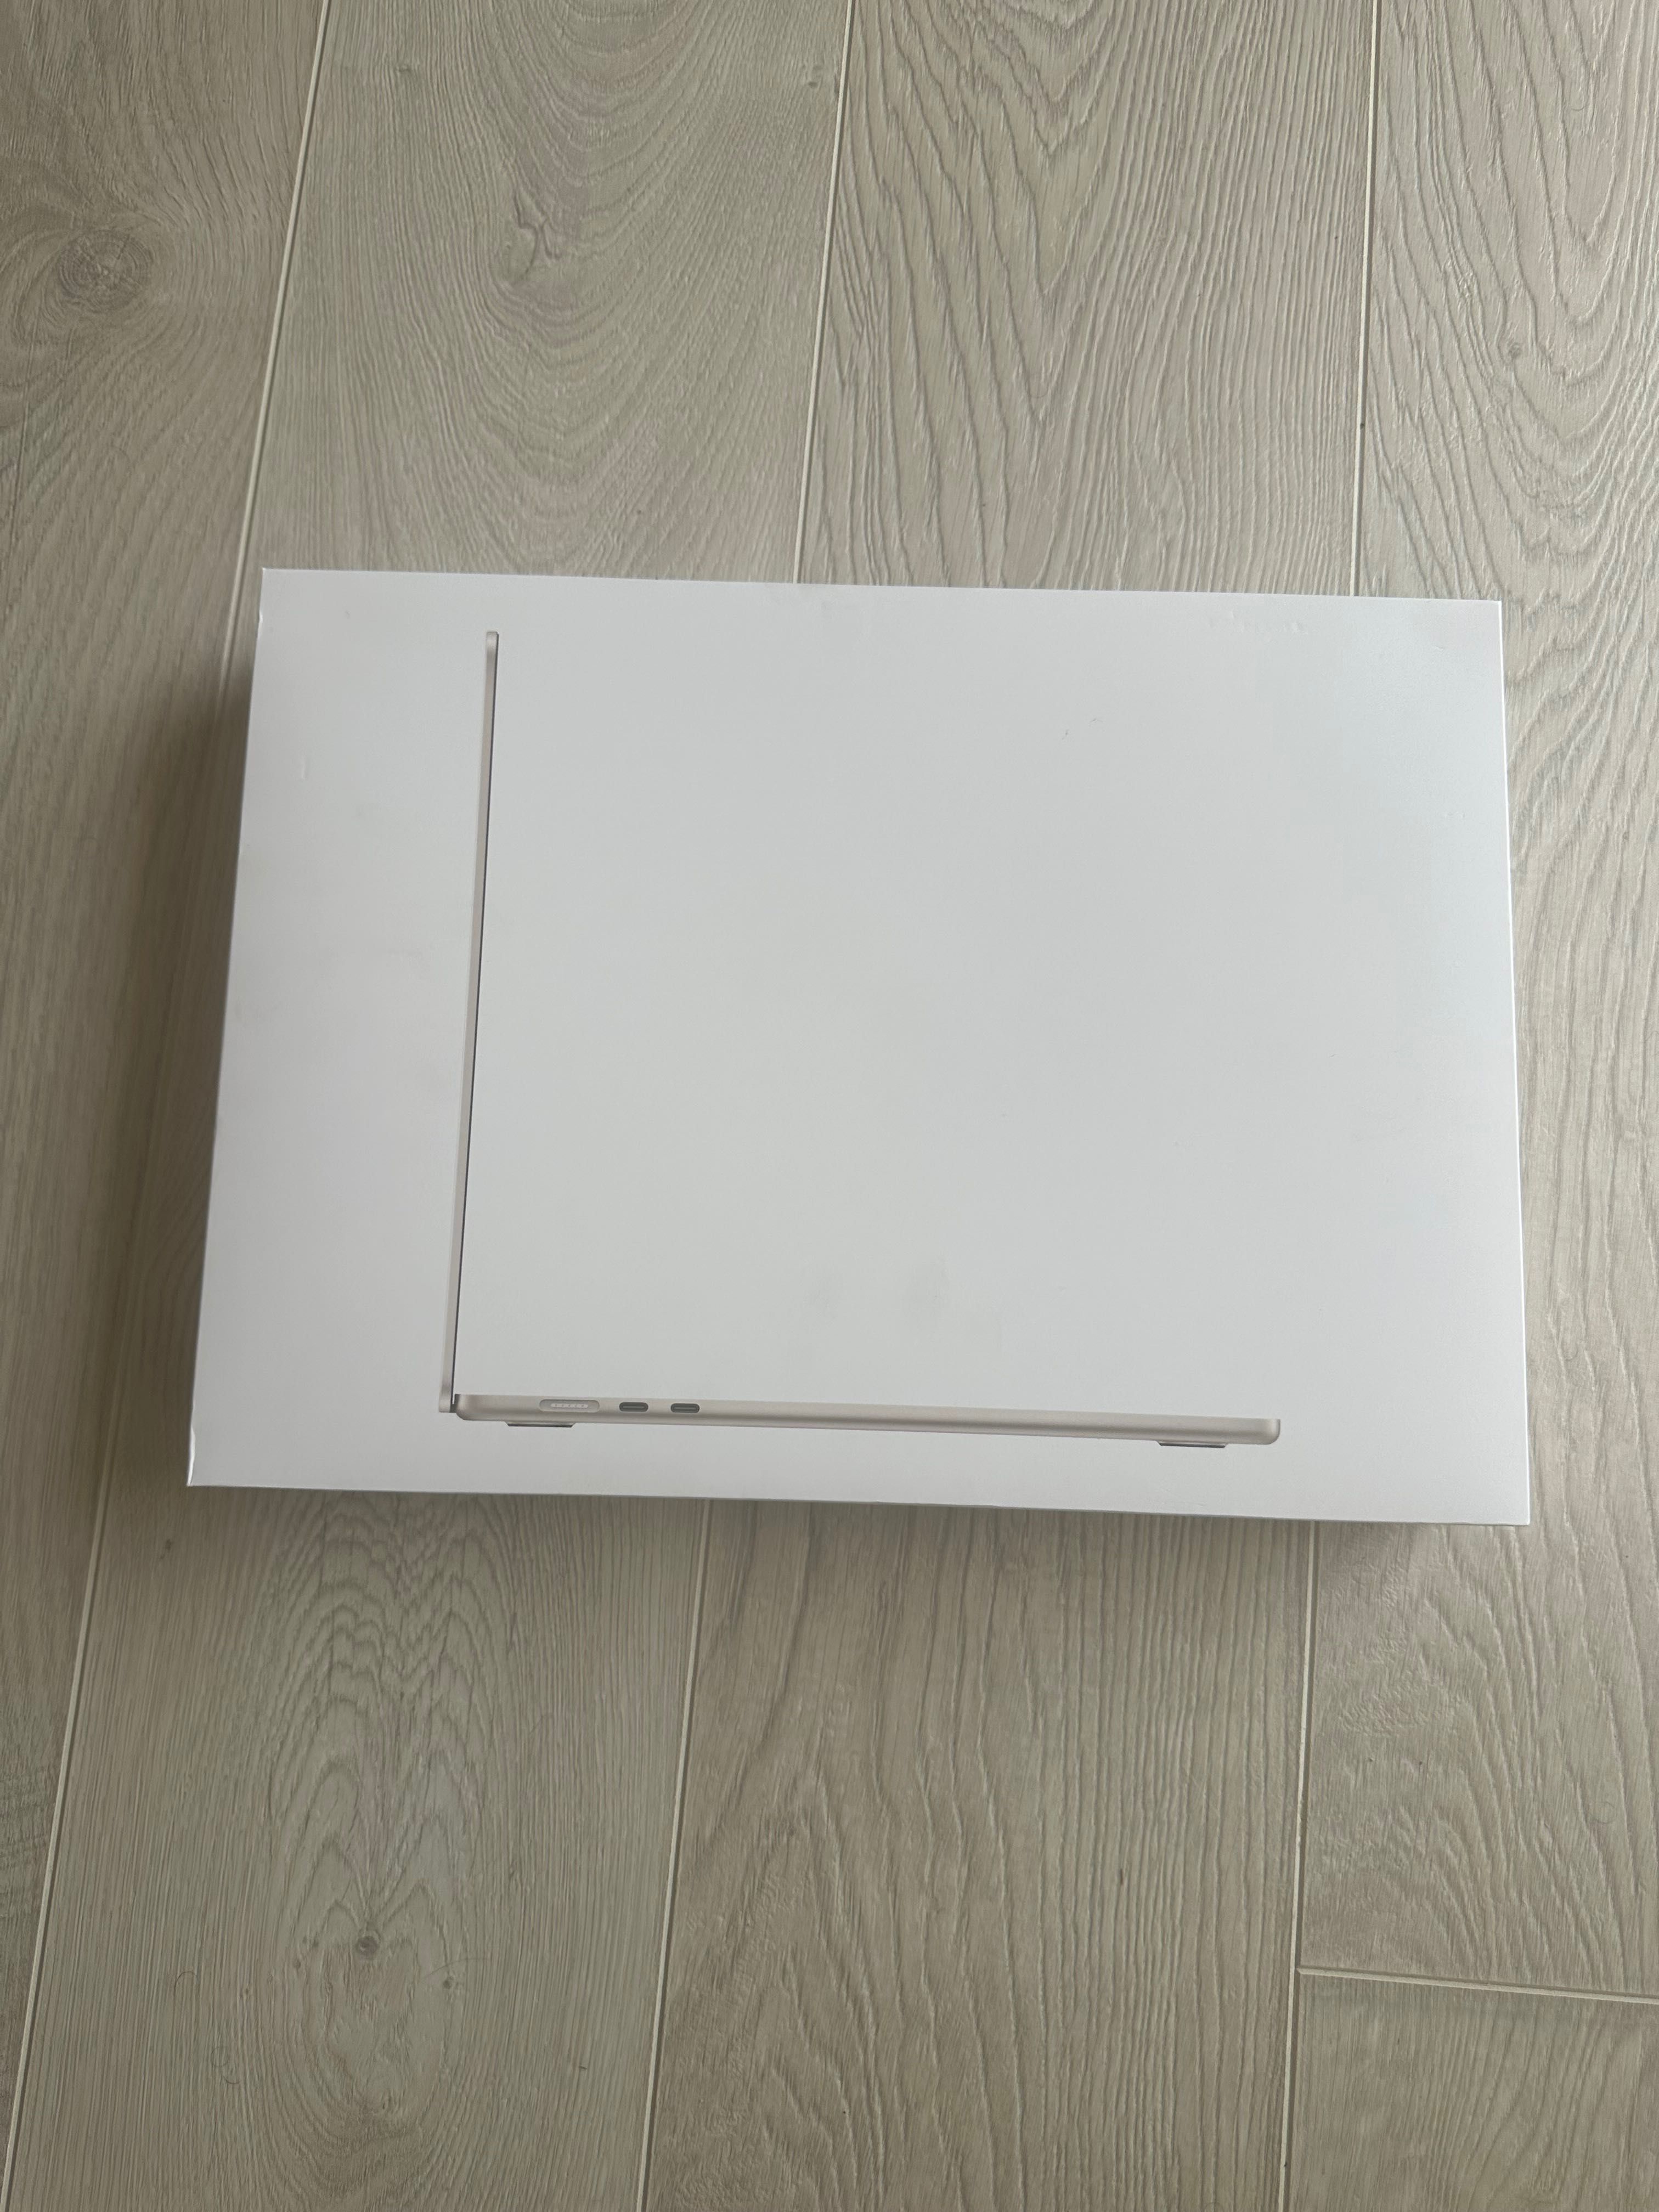 Apple MacBook Air 15”